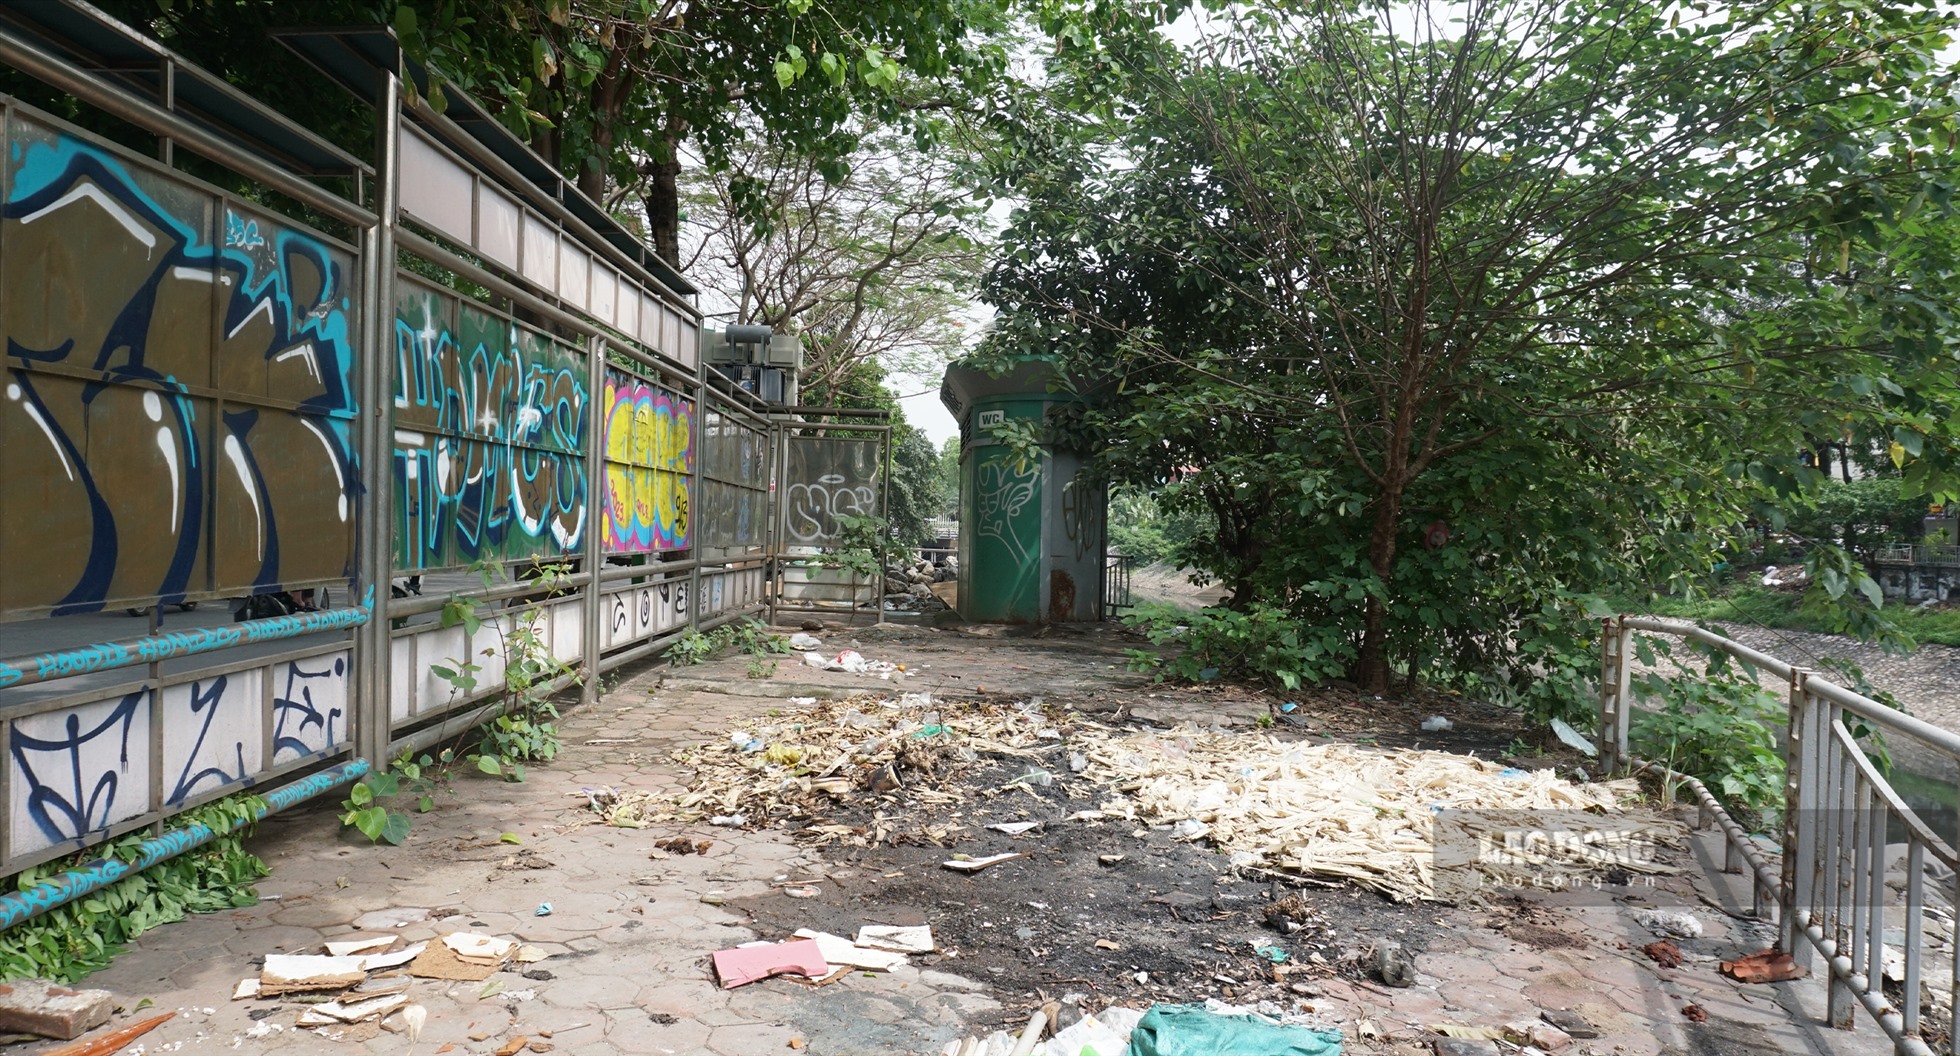 Tương tự, tại biển quảng cáo trên phố Giáp Nhất (quận Thanh Xuân) còn là nơi đốt rác thải, gây ô nhiễm môi trường, khiến cho người dân sinh sống ở đây bức xúc.